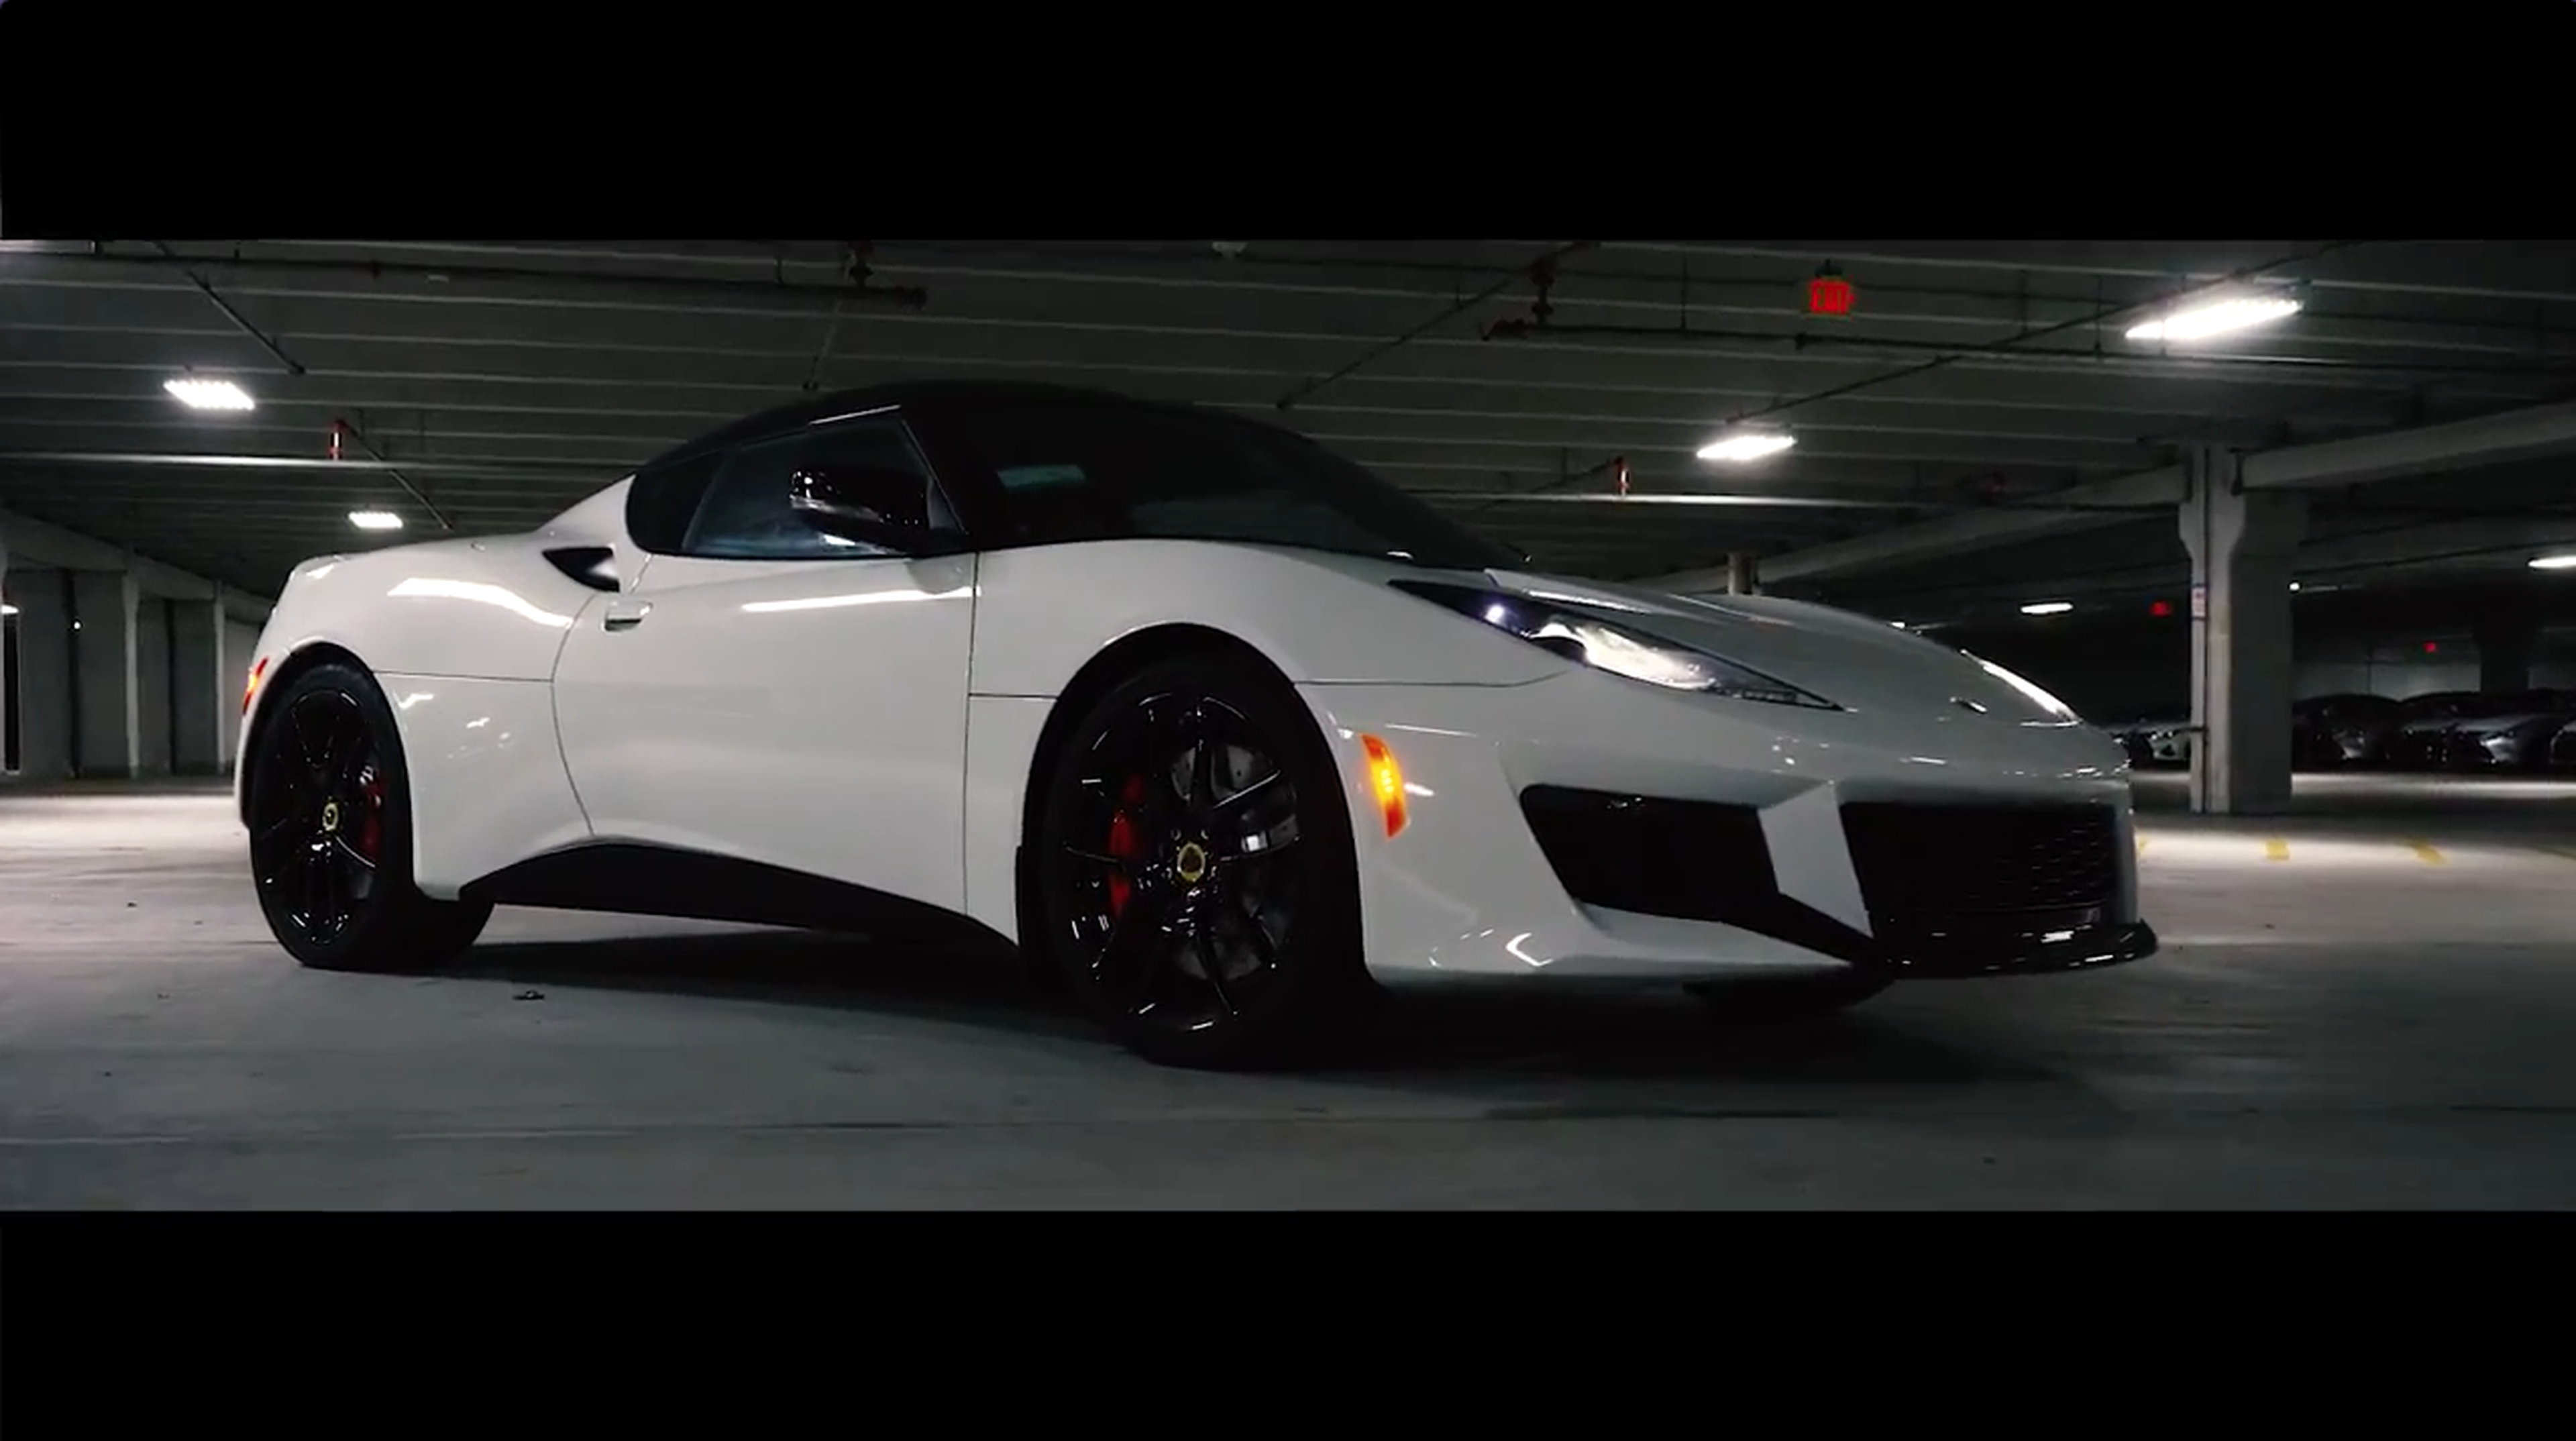 VÍDEO: Lotus Evora 400 en detalle, alucina cómo reluce en la noche